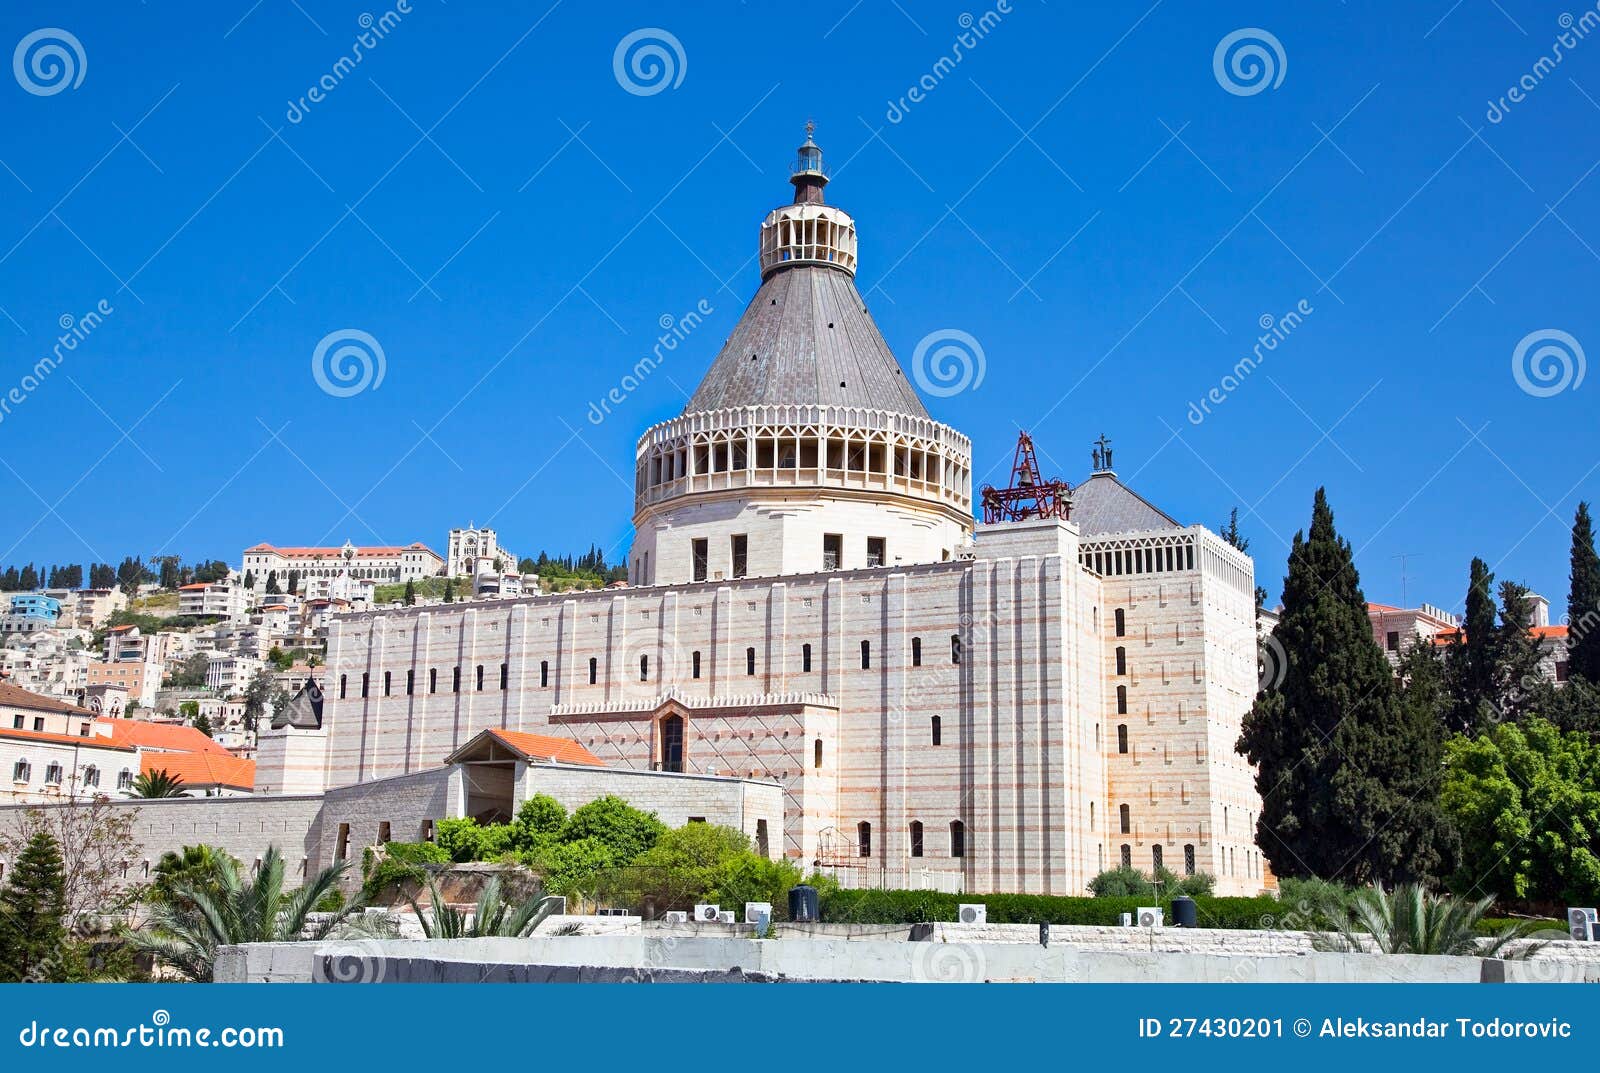 basilica of the annunciation, nazareth, israel